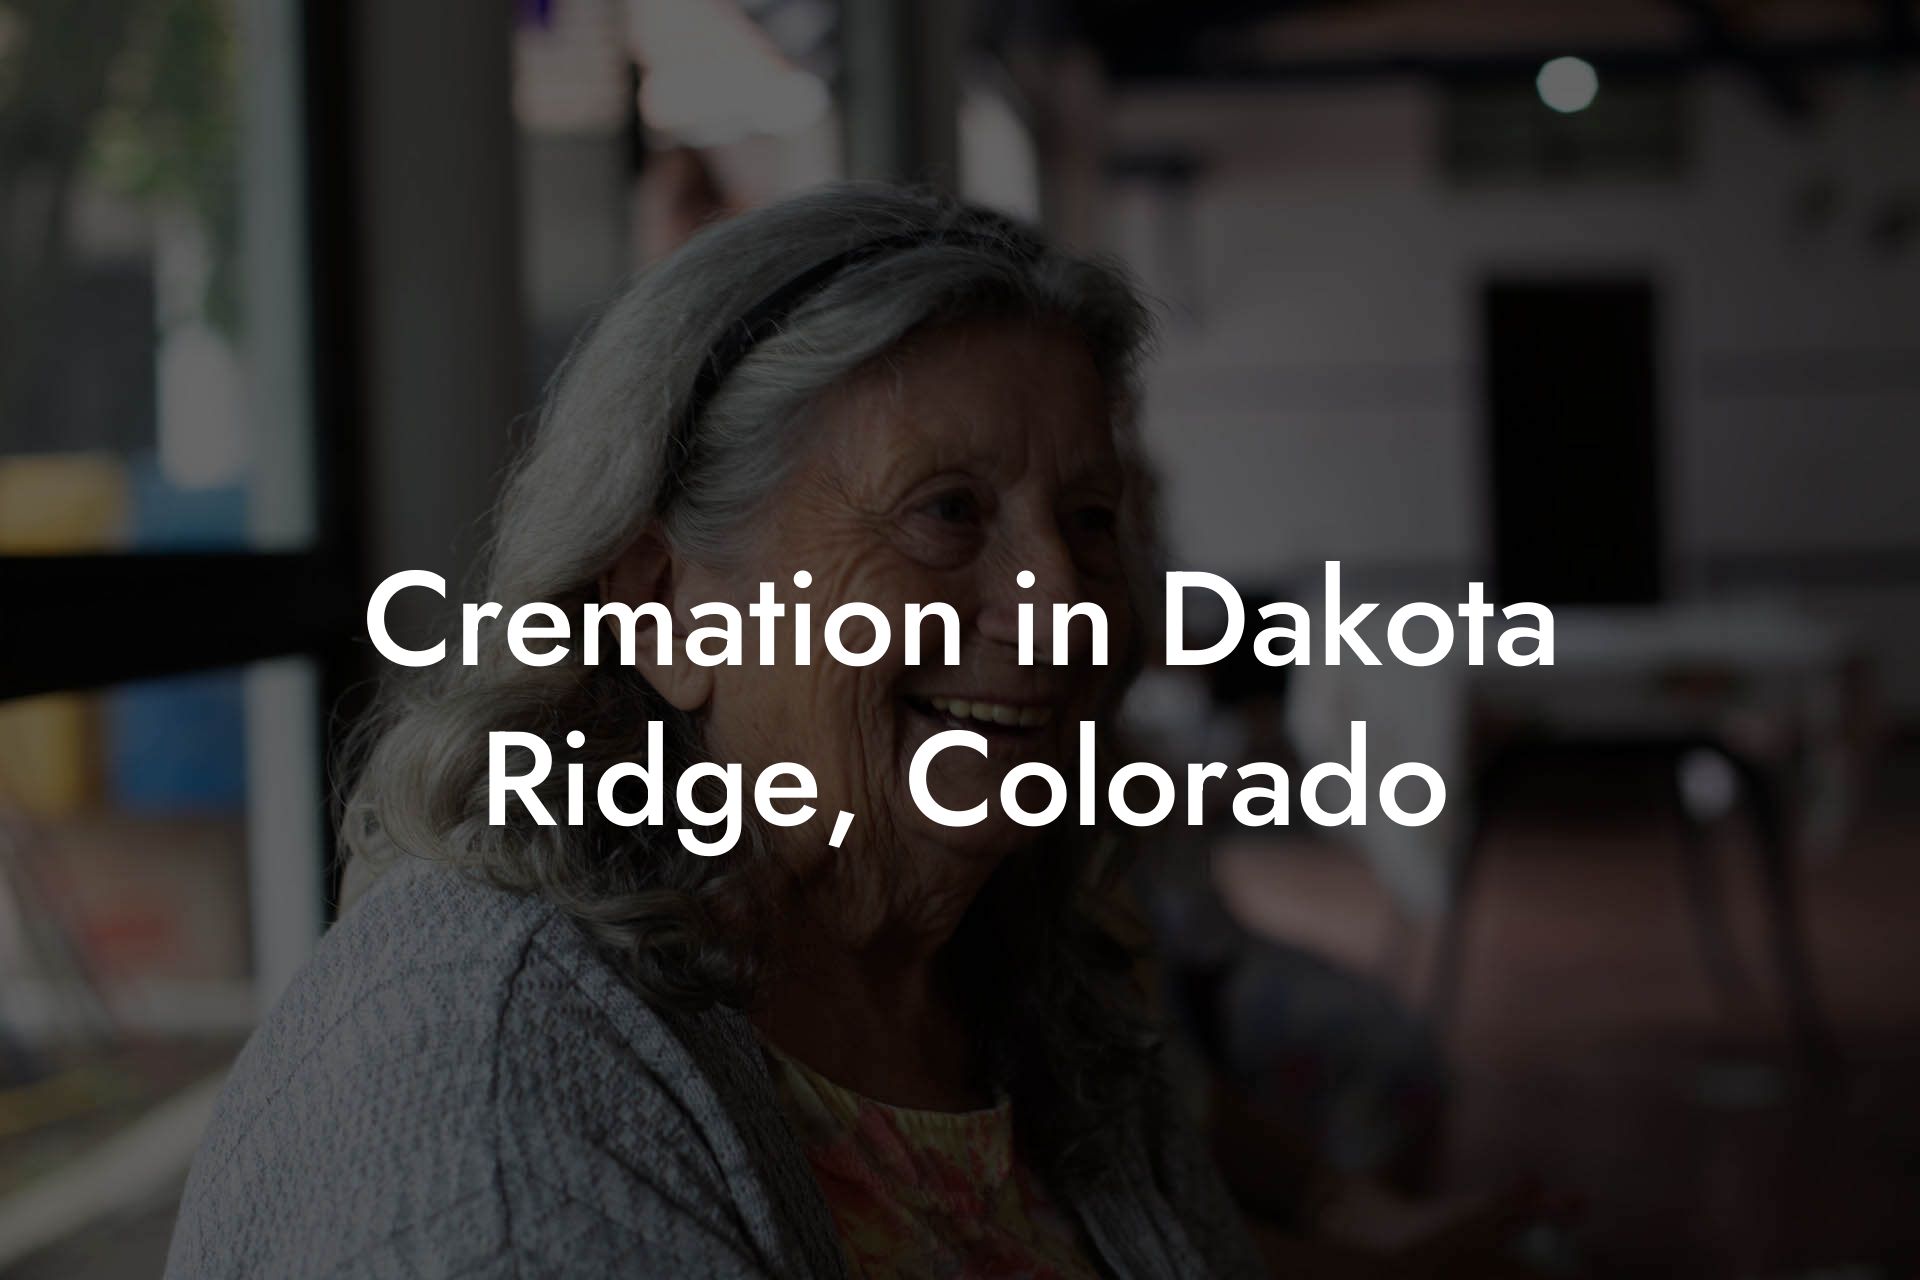 Cremation in Dakota Ridge, Colorado